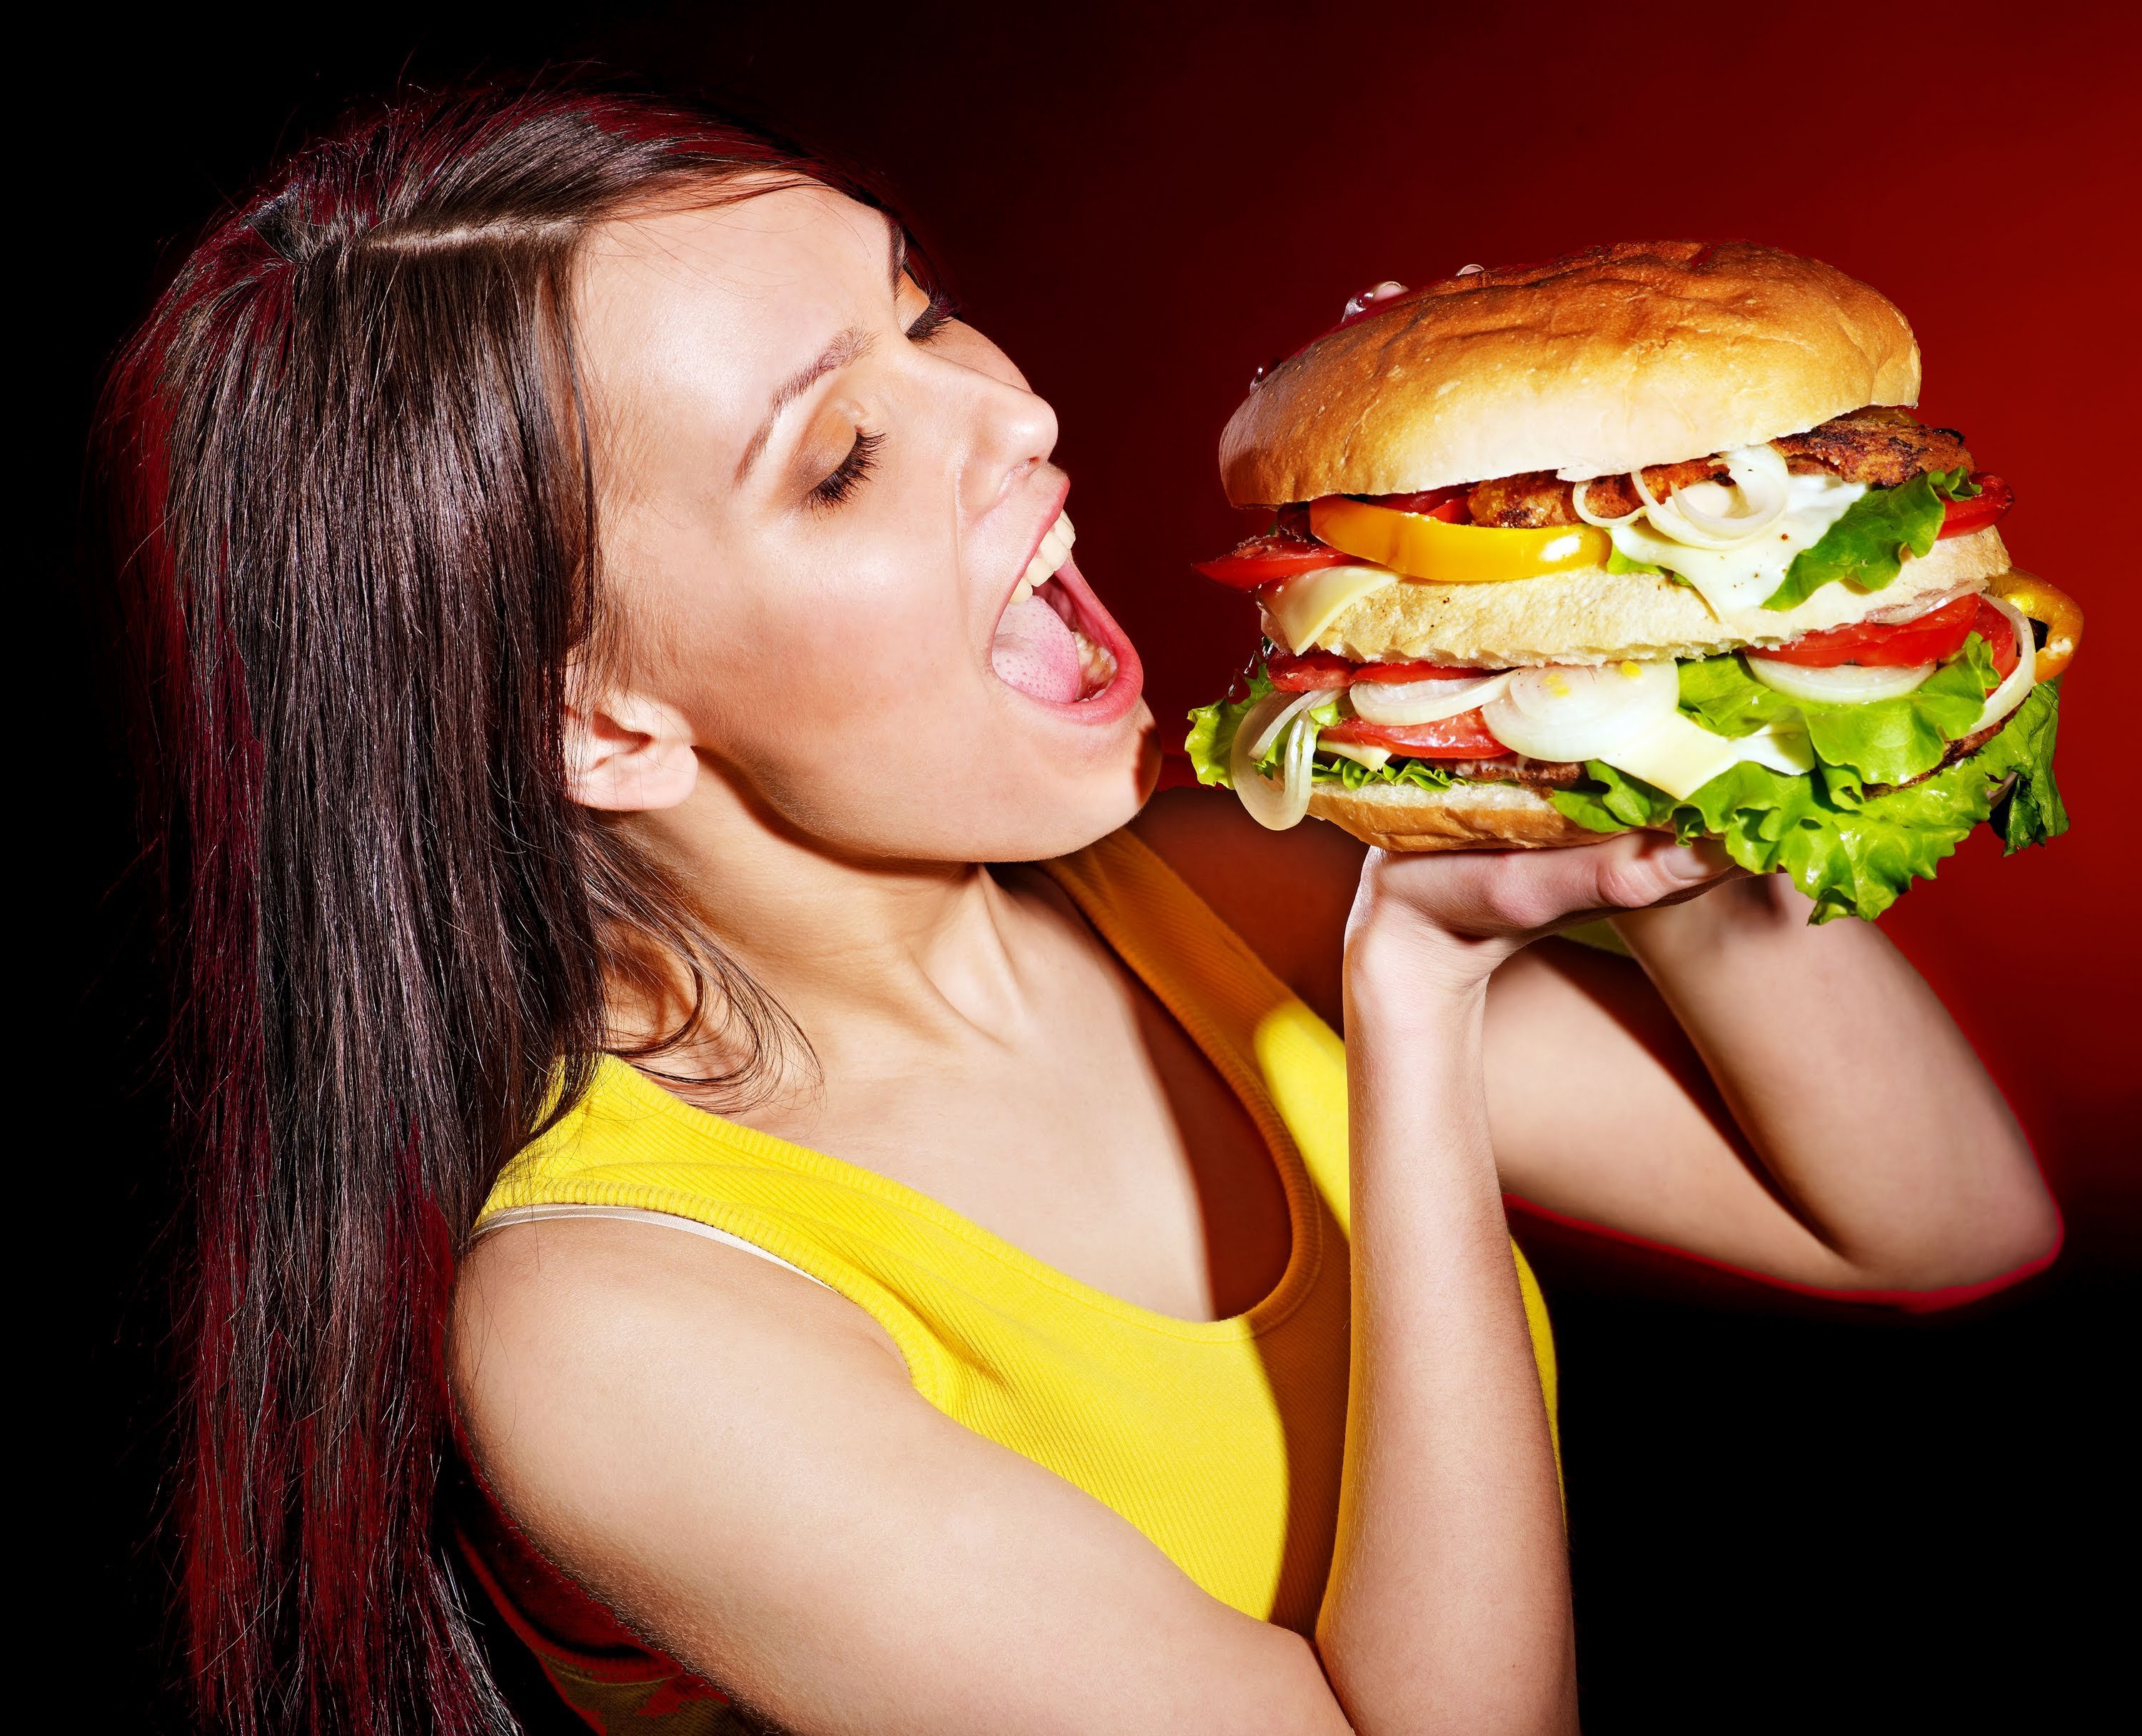 She eats meat. Девушка с гамбургером. Девушка ест гамбургер. Человек ест бургер. Человек ест гамбургер.